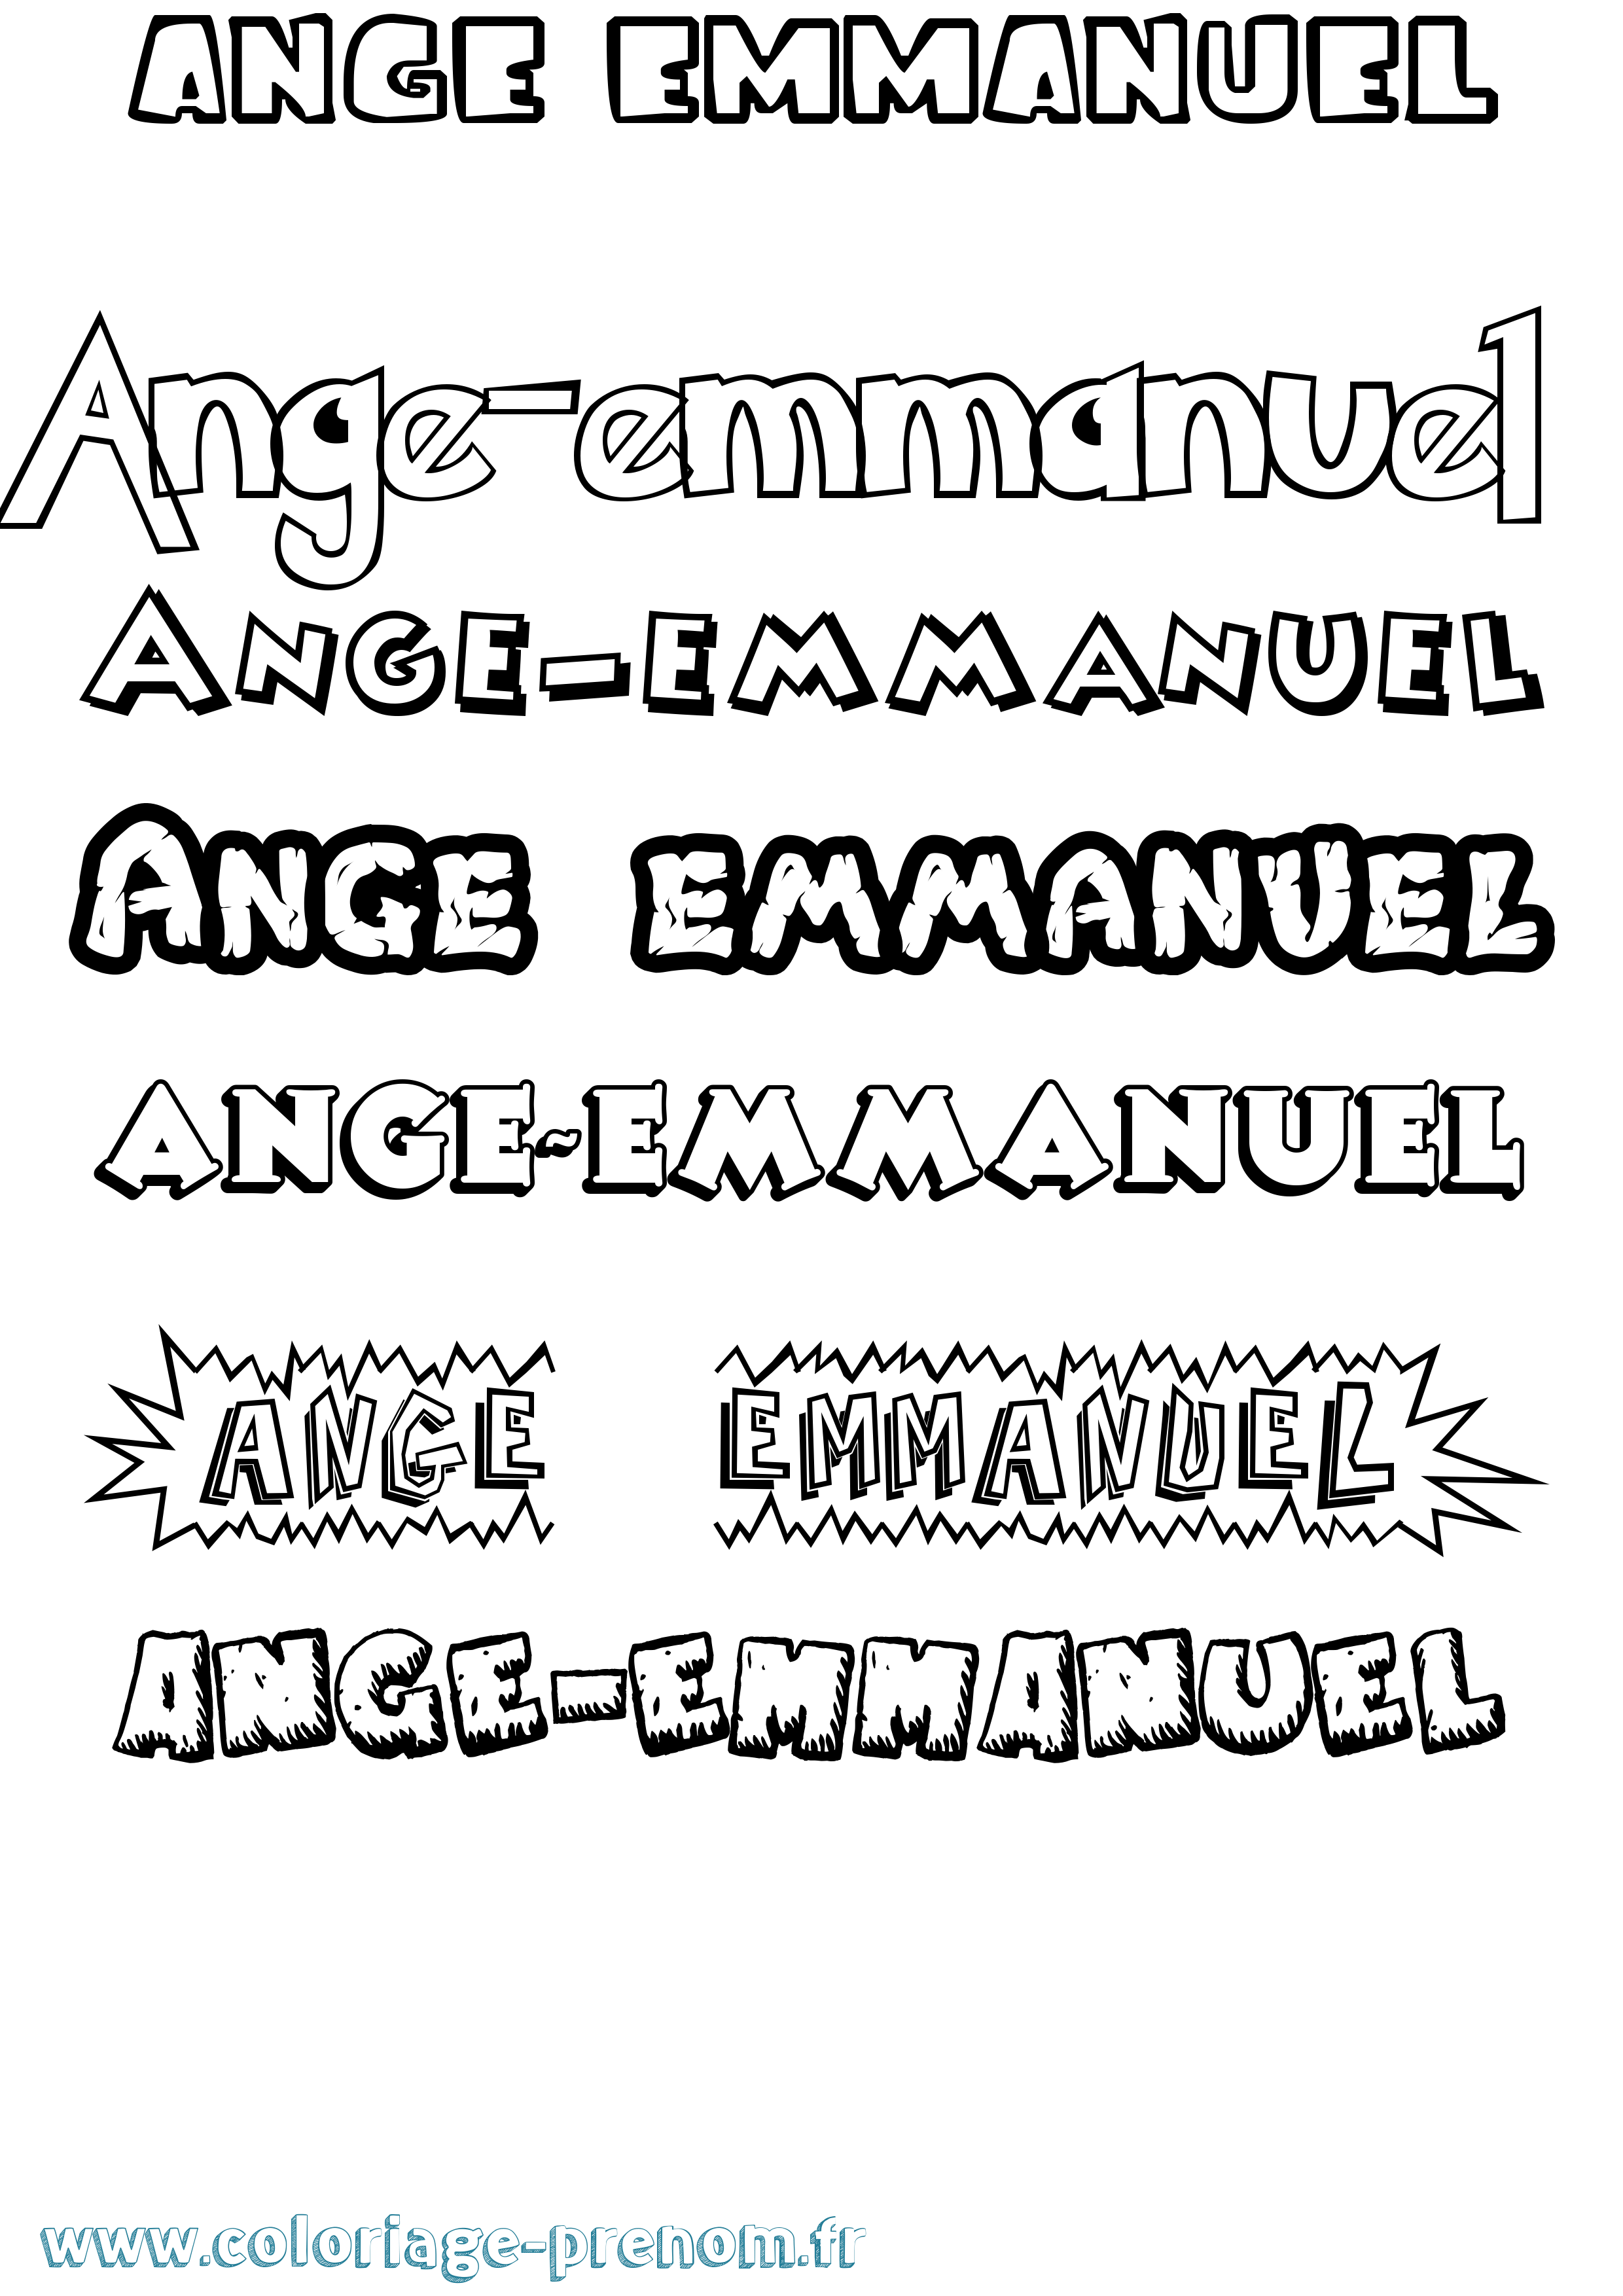 Coloriage prénom Ange-Emmanuel Dessin Animé